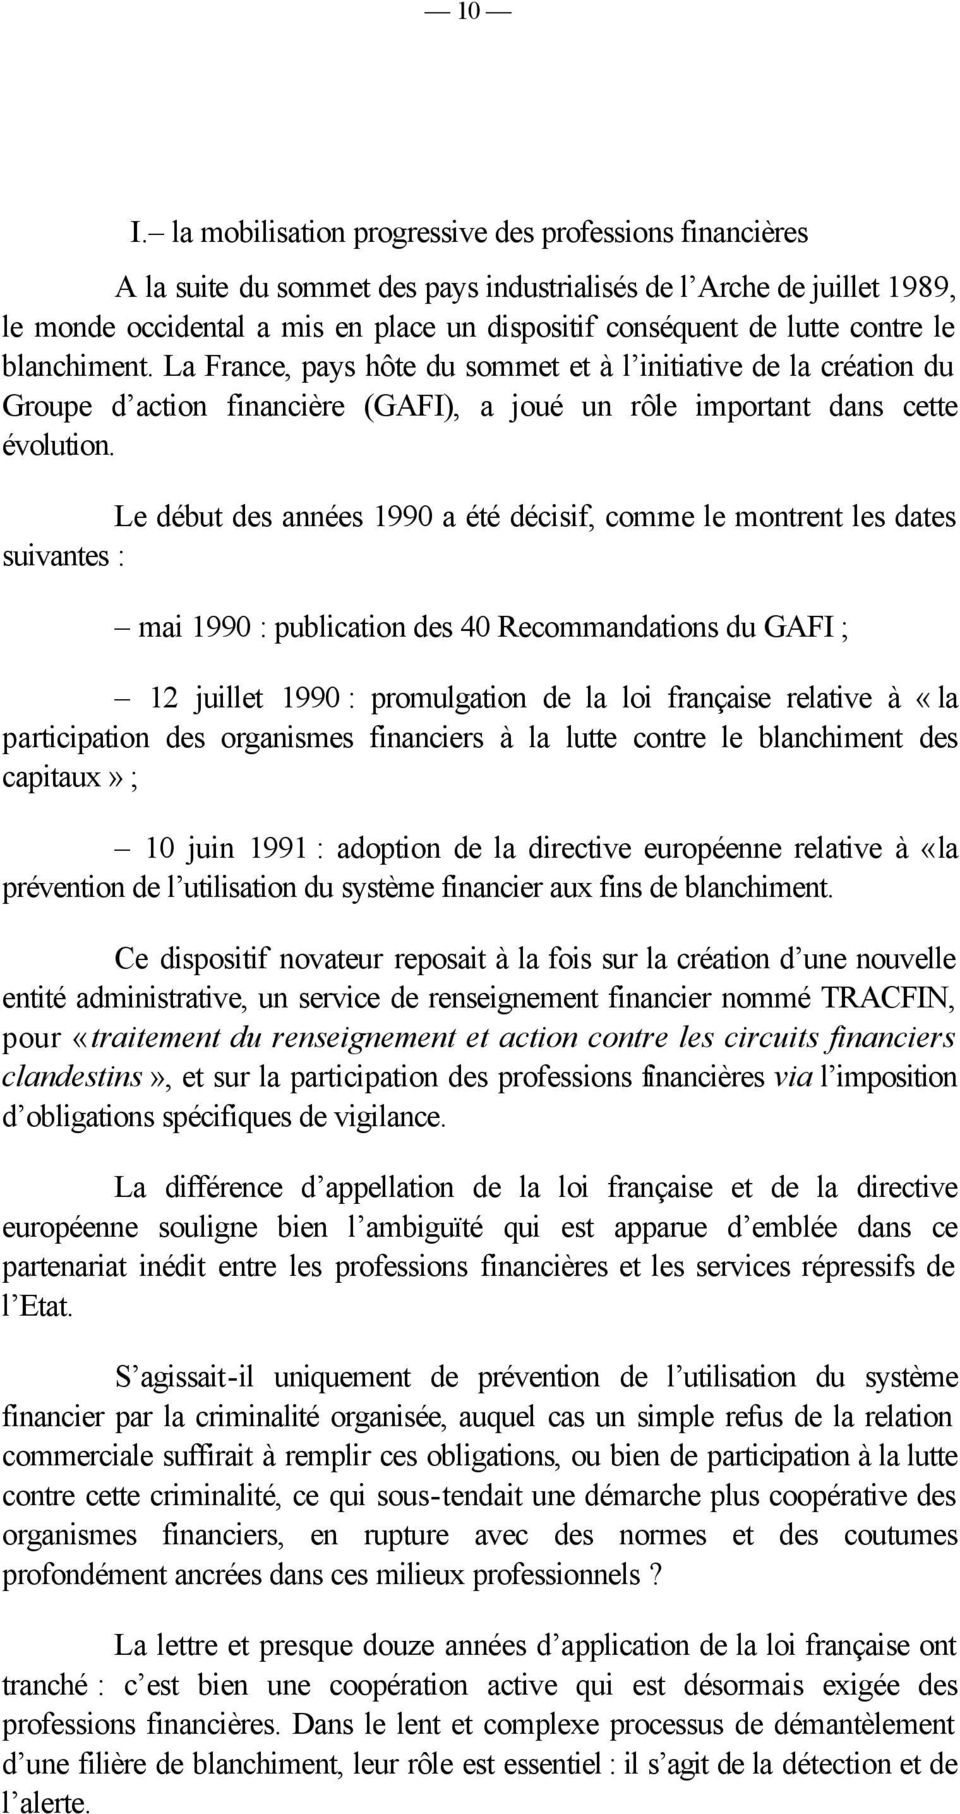 Le début des années 1990 a été décisif, comme le montrent les dates suivantes : mai 1990 : publication des 40 Recommandations du GAFI ; 12 juillet 1990 : promulgation de la loi française relative à